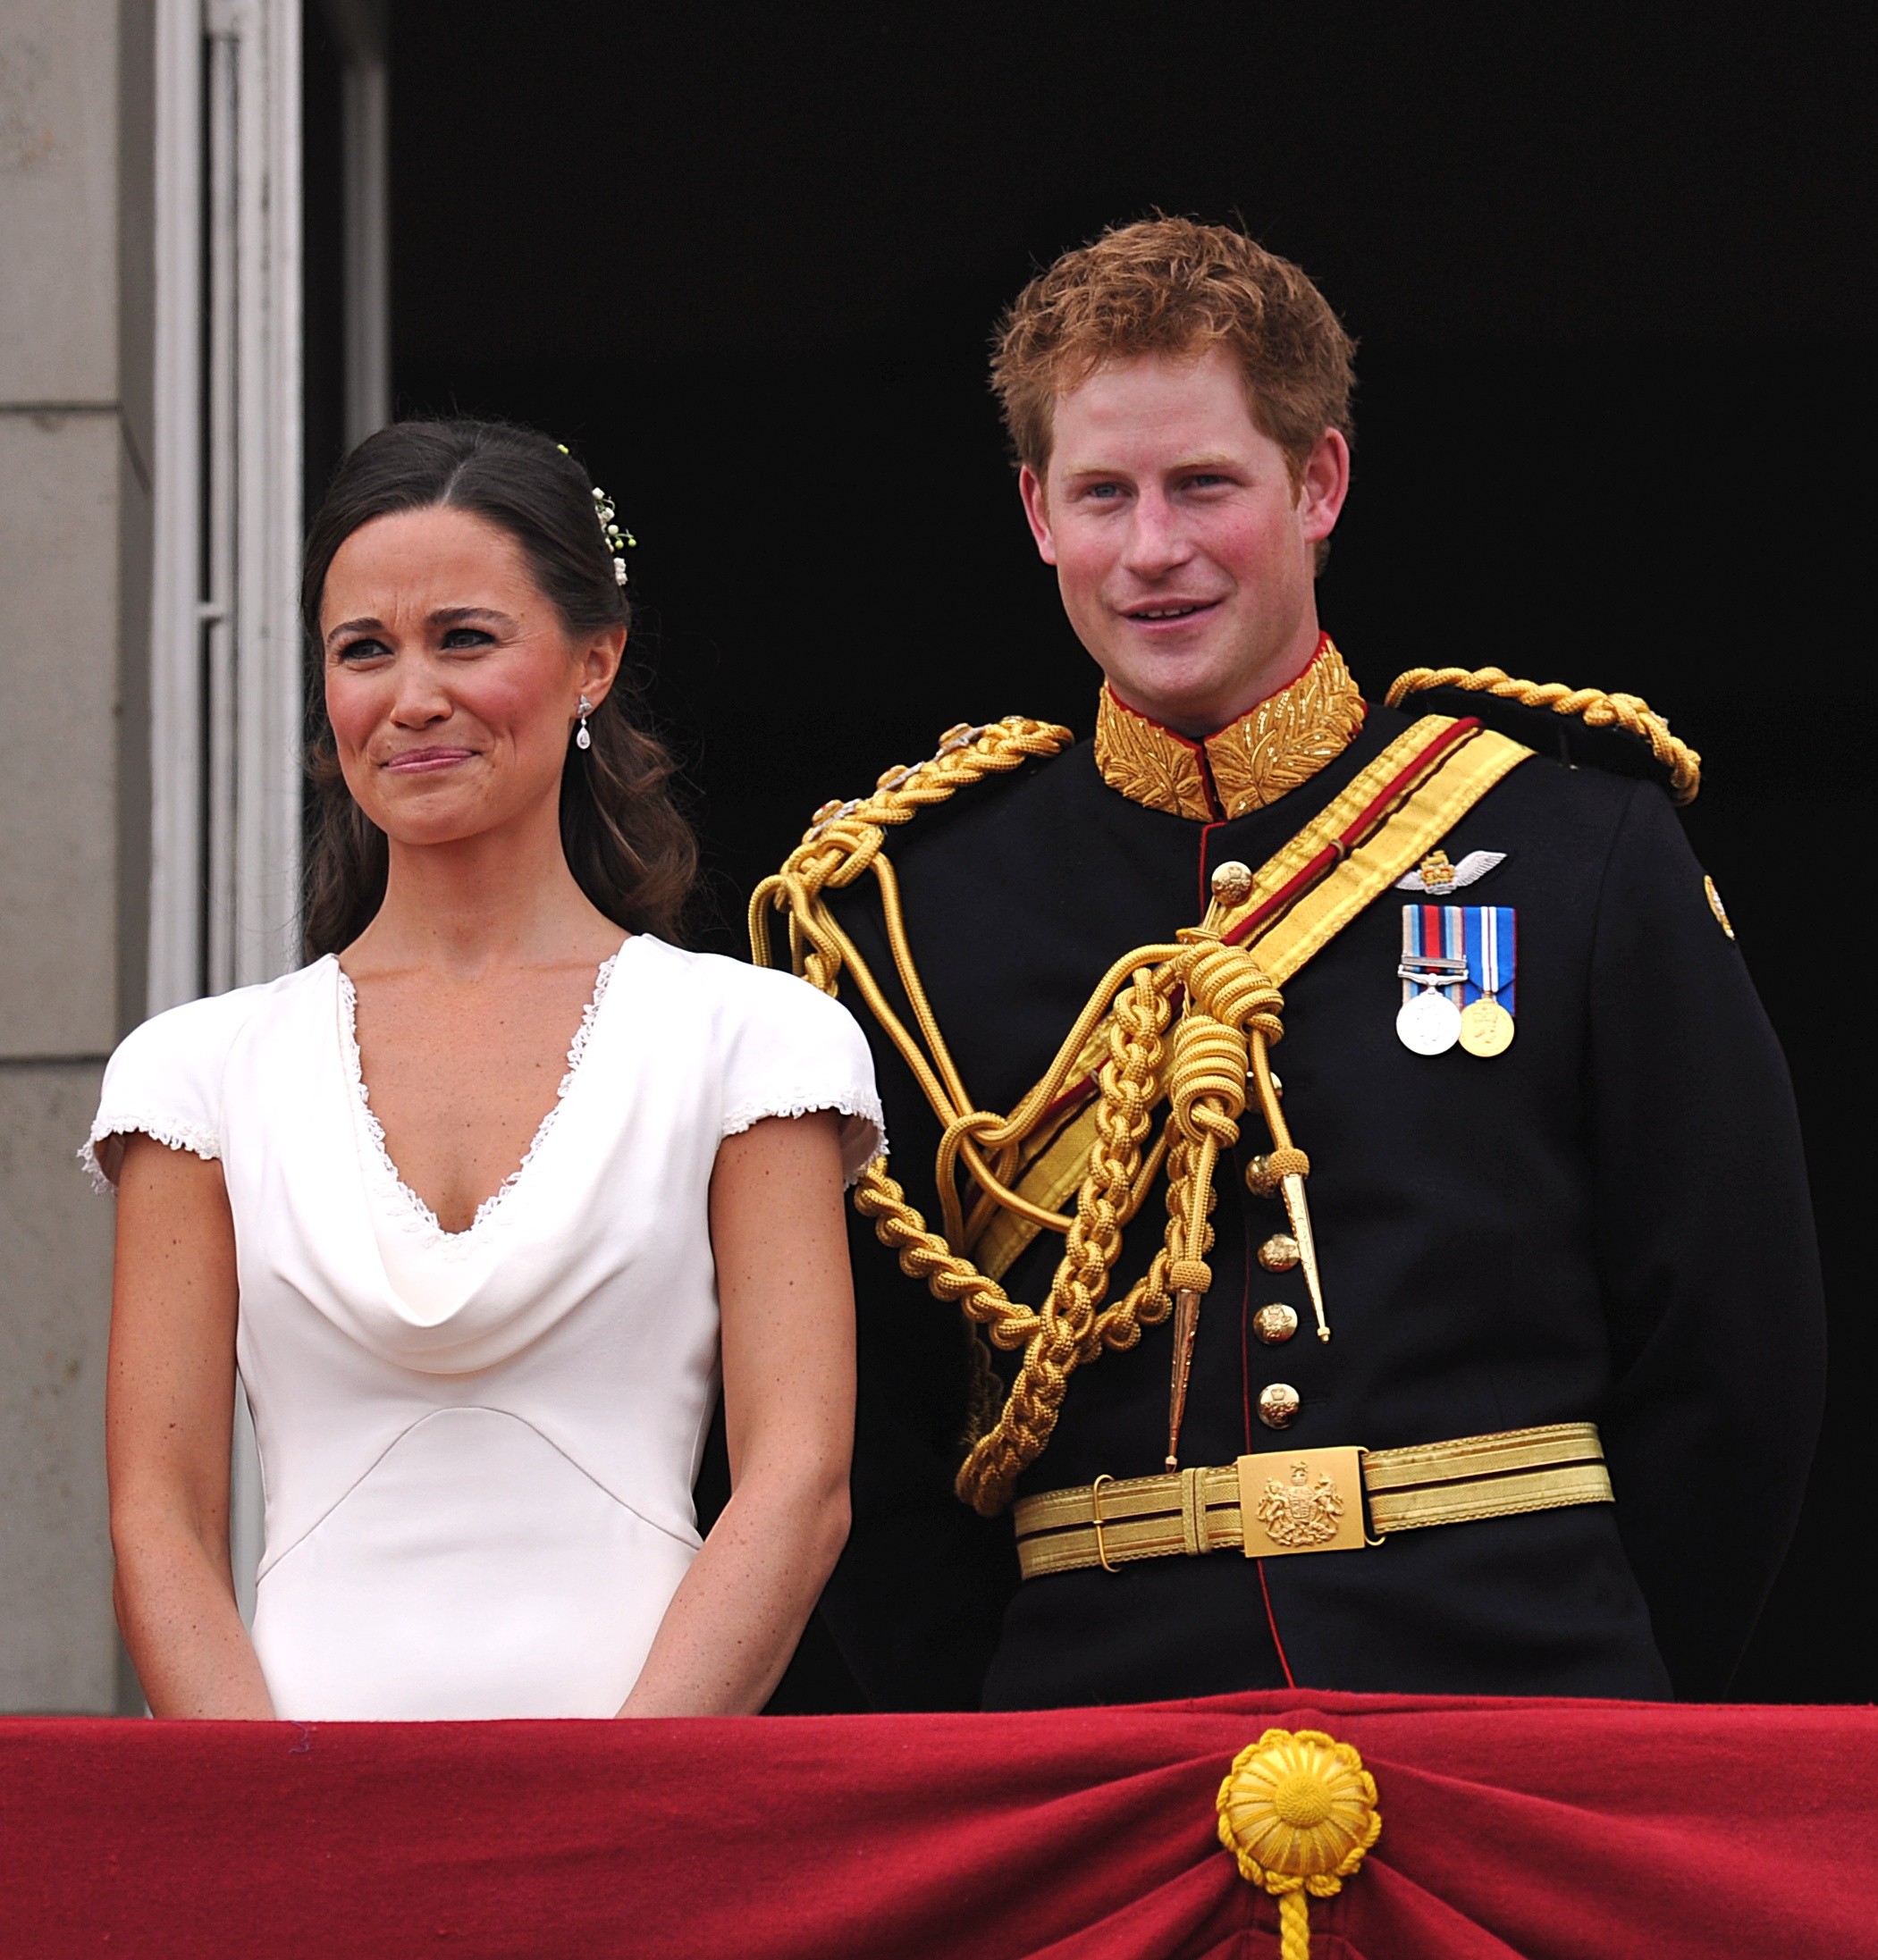 O padrinho Príncipe Harry e madrinha Pippa Middleton na varanda no Palácio de Buckingham após o casamento real do Príncipe William e Kate Middleton em 29 de abril de 2011 em Londres, Inglaterra (Foto: Getty Images)